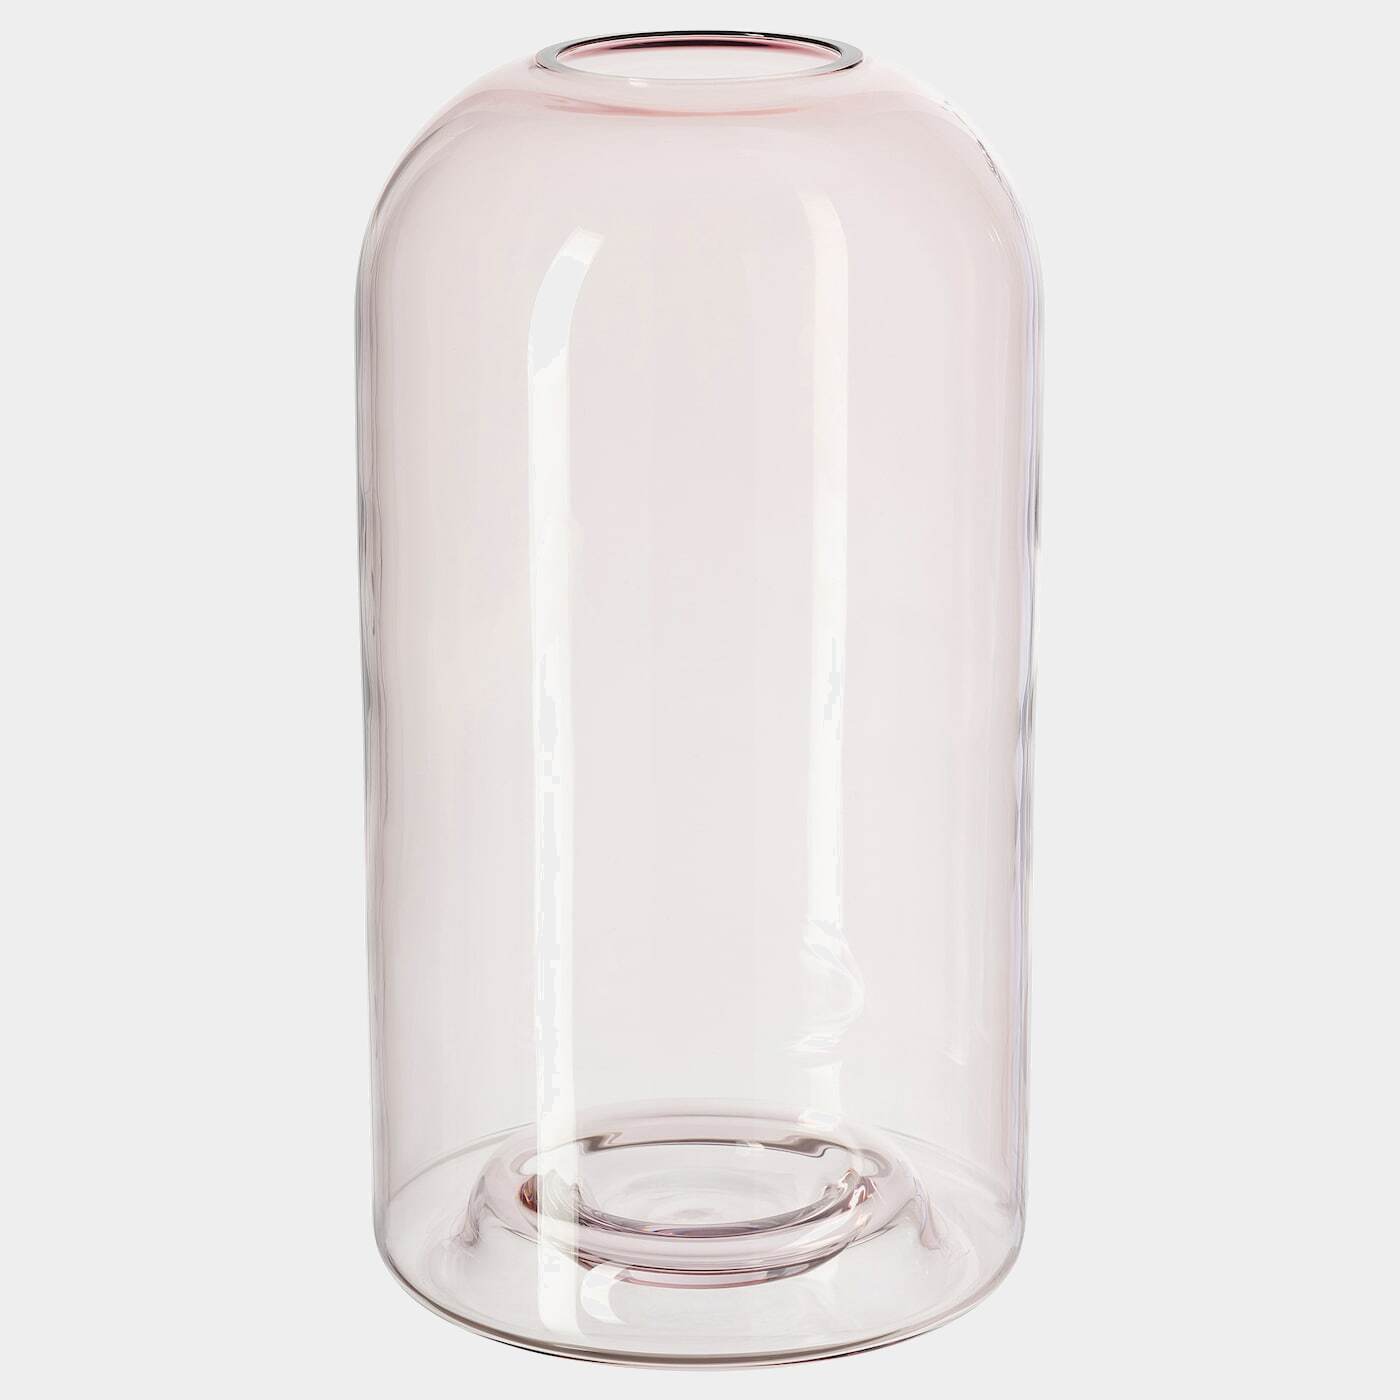 DRÖMSK Vase  -  - Möbel Ideen für dein Zuhause von Home Trends. Möbel Trends von Social Media Influencer für dein Skandi Zuhause.